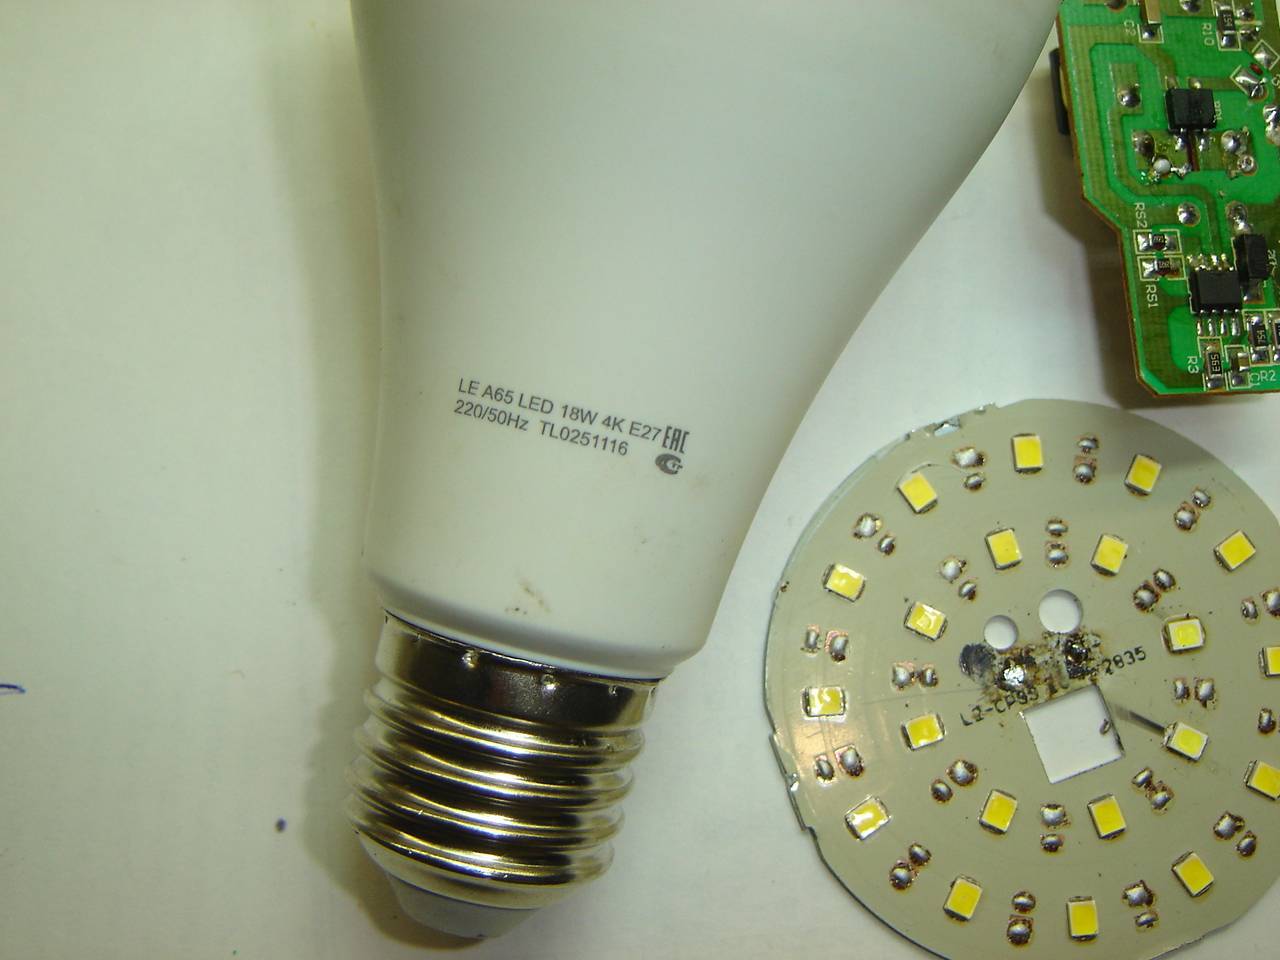 Светодиодные лампы своими руками 220. Светодиодная лампа е27 разборка. Разбор светодиодной лампы e27. Светодиодная лампа е27 150 ватт. Разобрать светодиодную лампу е27 Gauss.